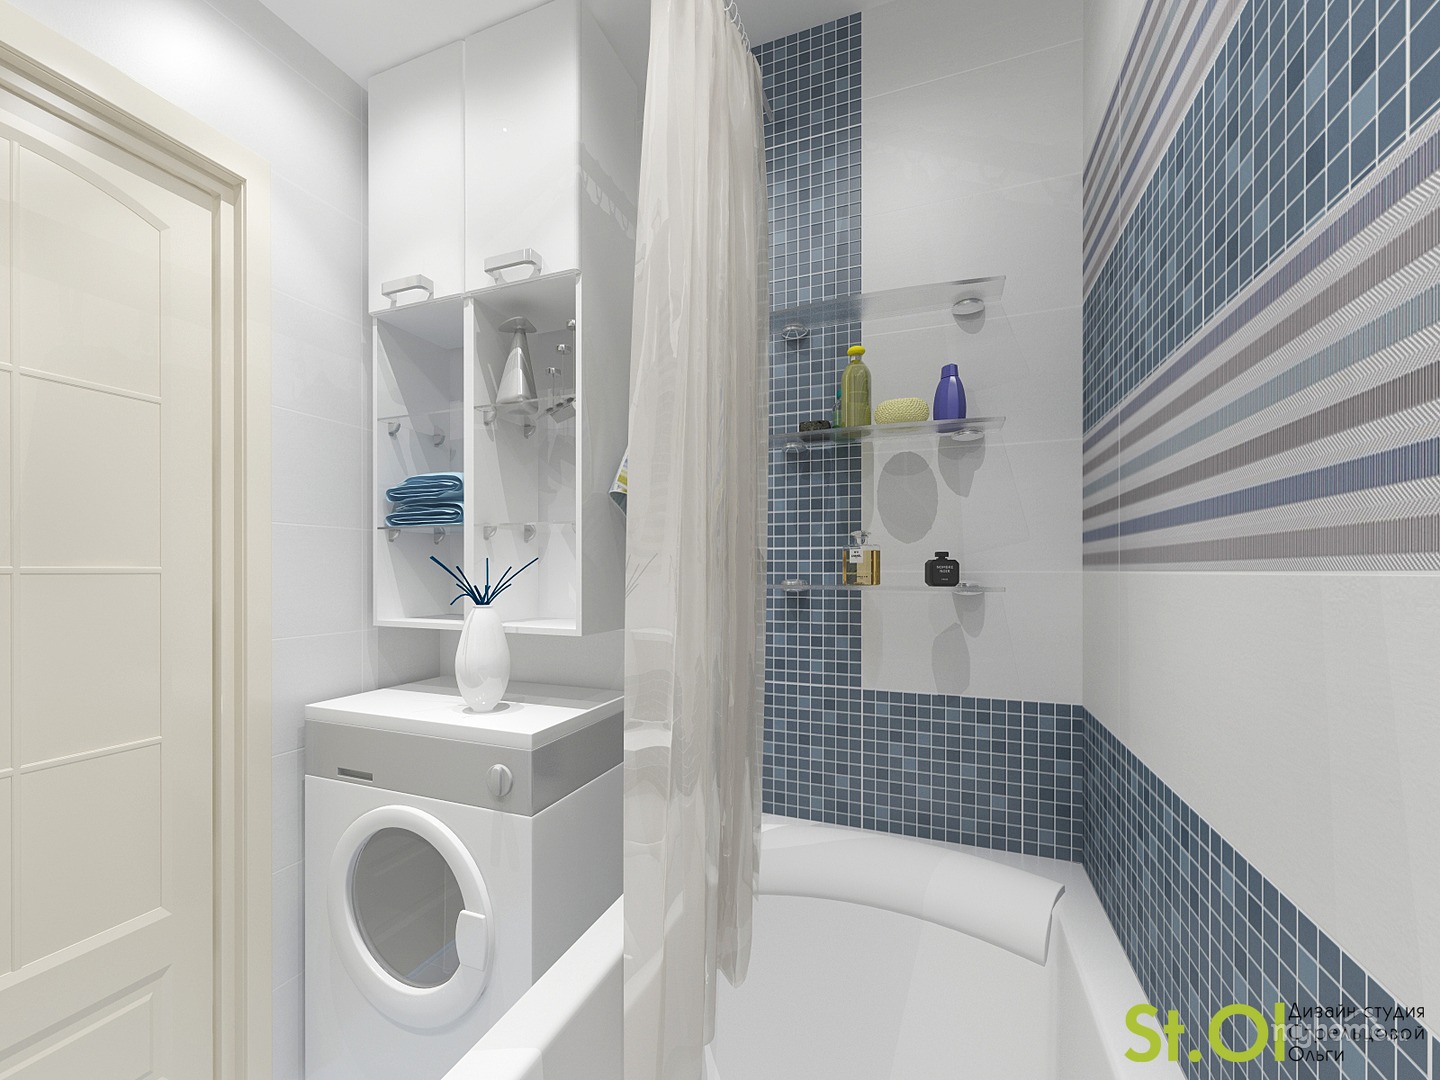 Ремонт ванной комнаты в чешке - 137 серия, дизайн и интерьер